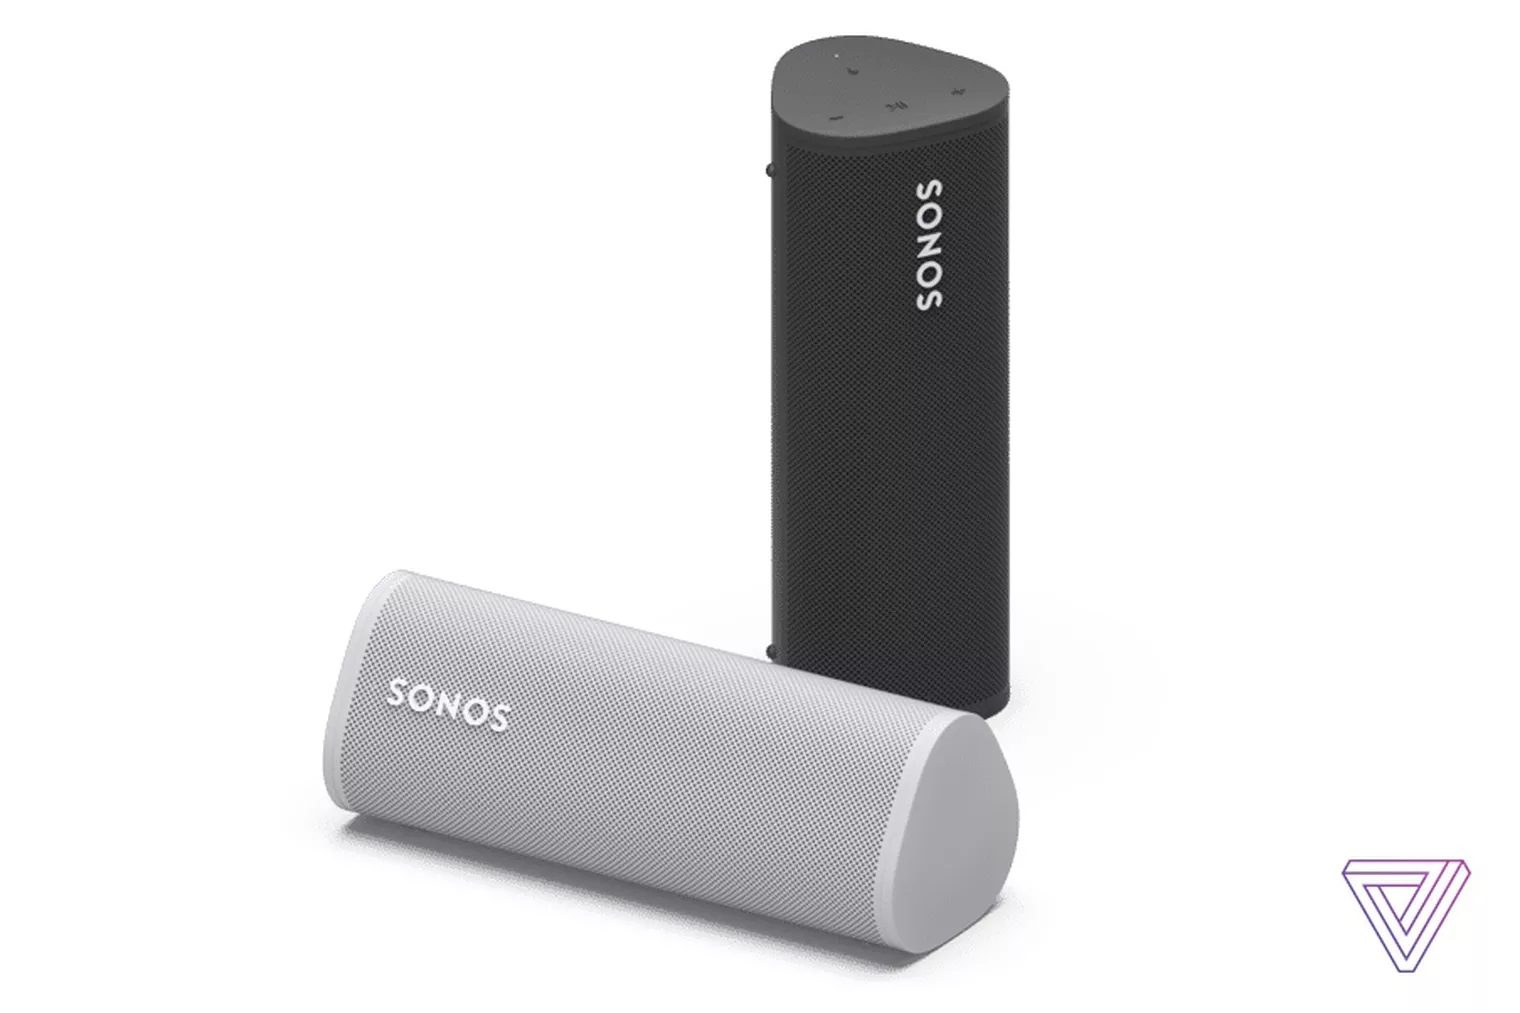 Roam : la moins chère des enceintes Bluetooth de Sonos débarque en avril